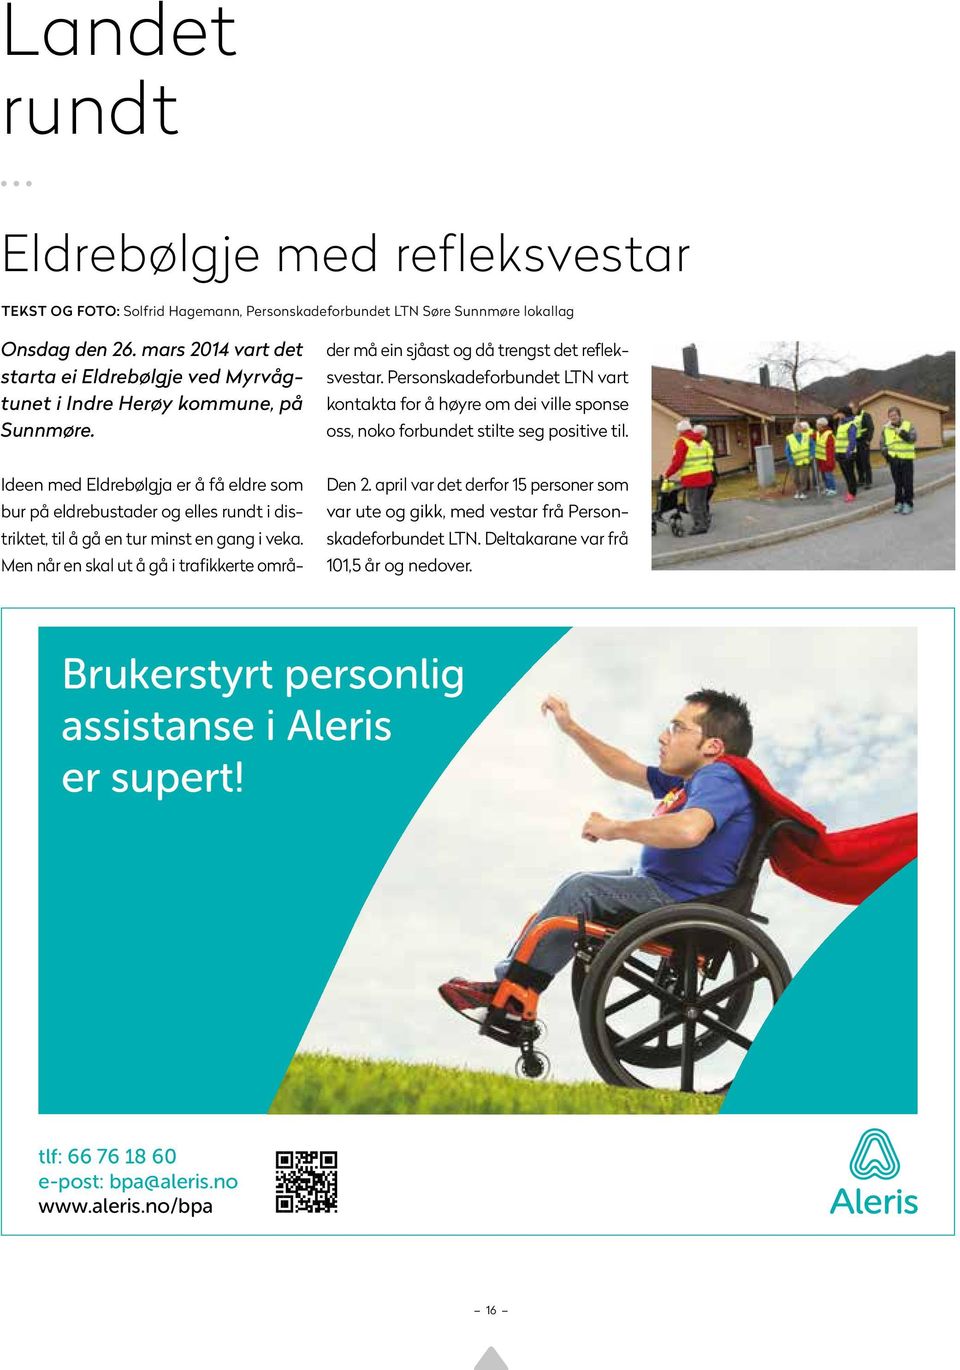 Ideen med Eldrebølgja er å få eldre som bur på eldrebustader og elles rundt i distriktet, til å gå en tur minst en gang i veka.